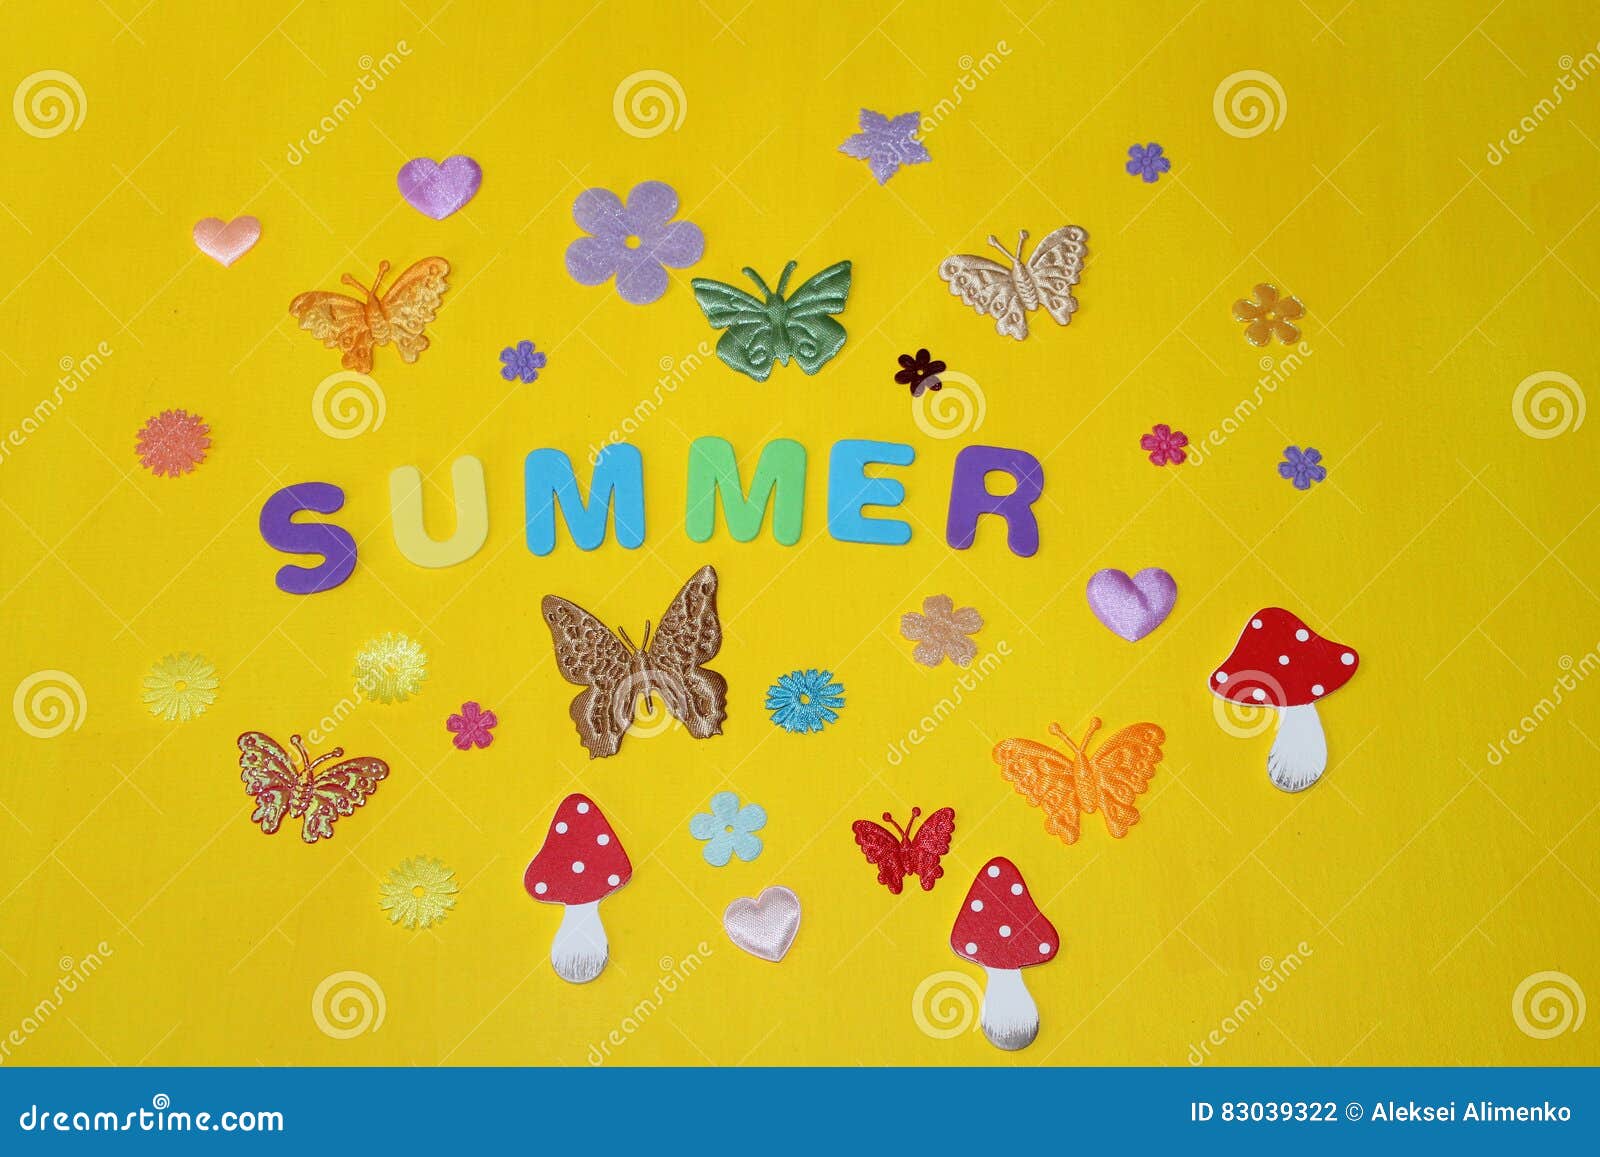 flowers butterflies on a yellow warm bright summer sun flowers